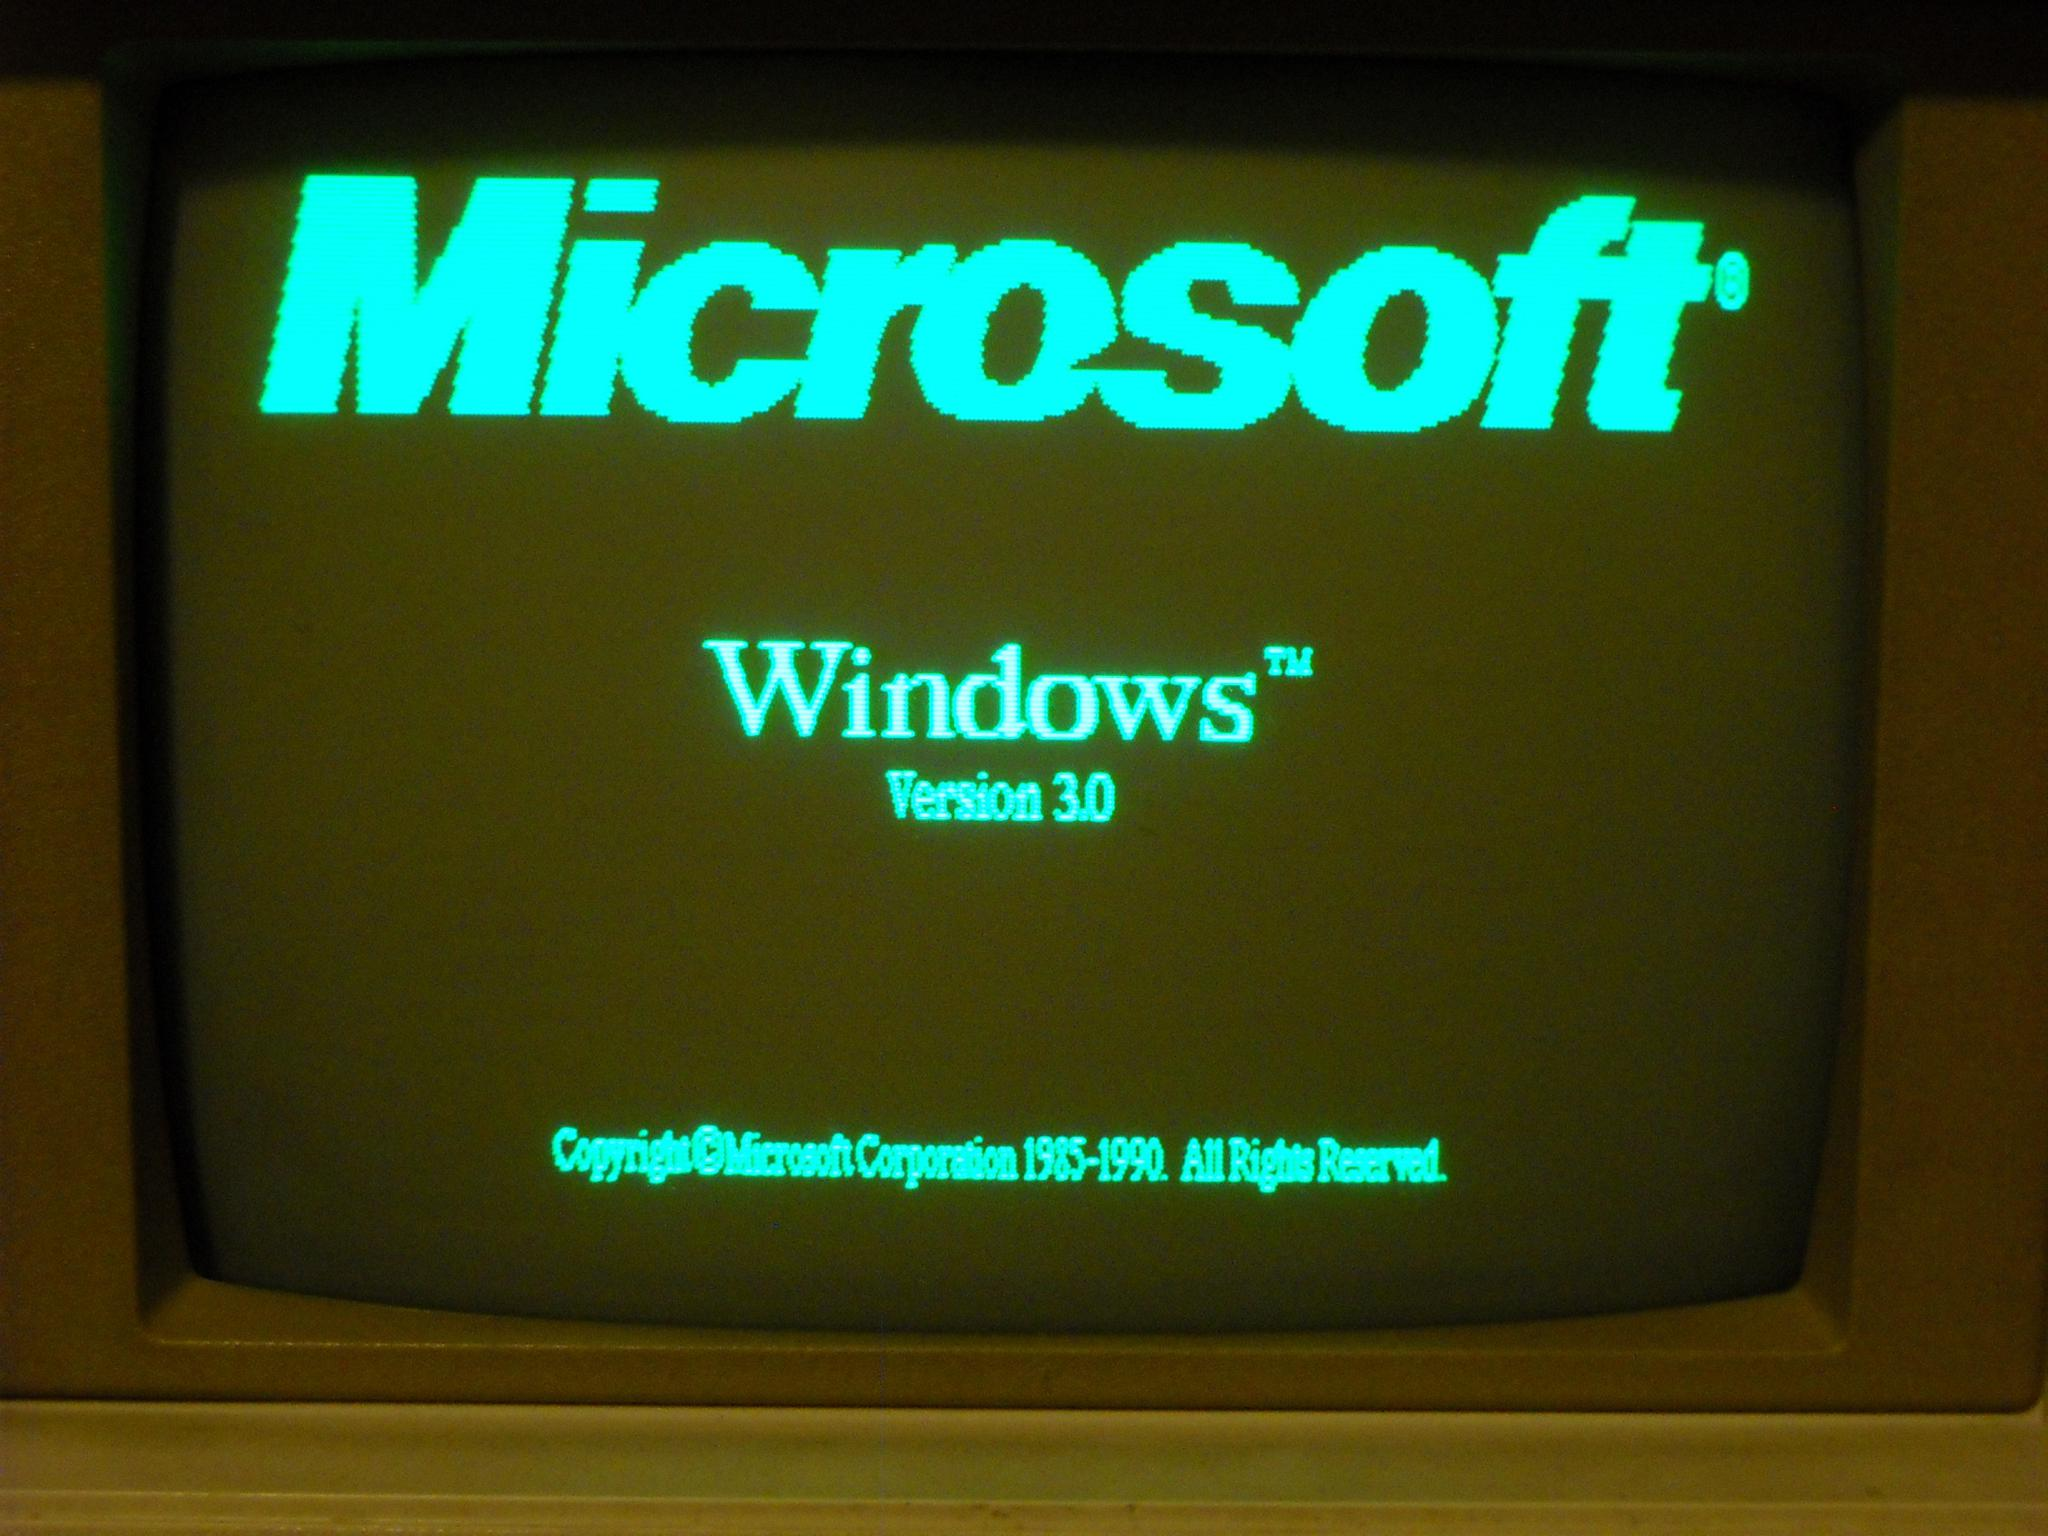 Windows 1.3. Виндовс 1. Виндовс 3.0. Виндовс 1.0. Windows 3.0 Интерфейс.